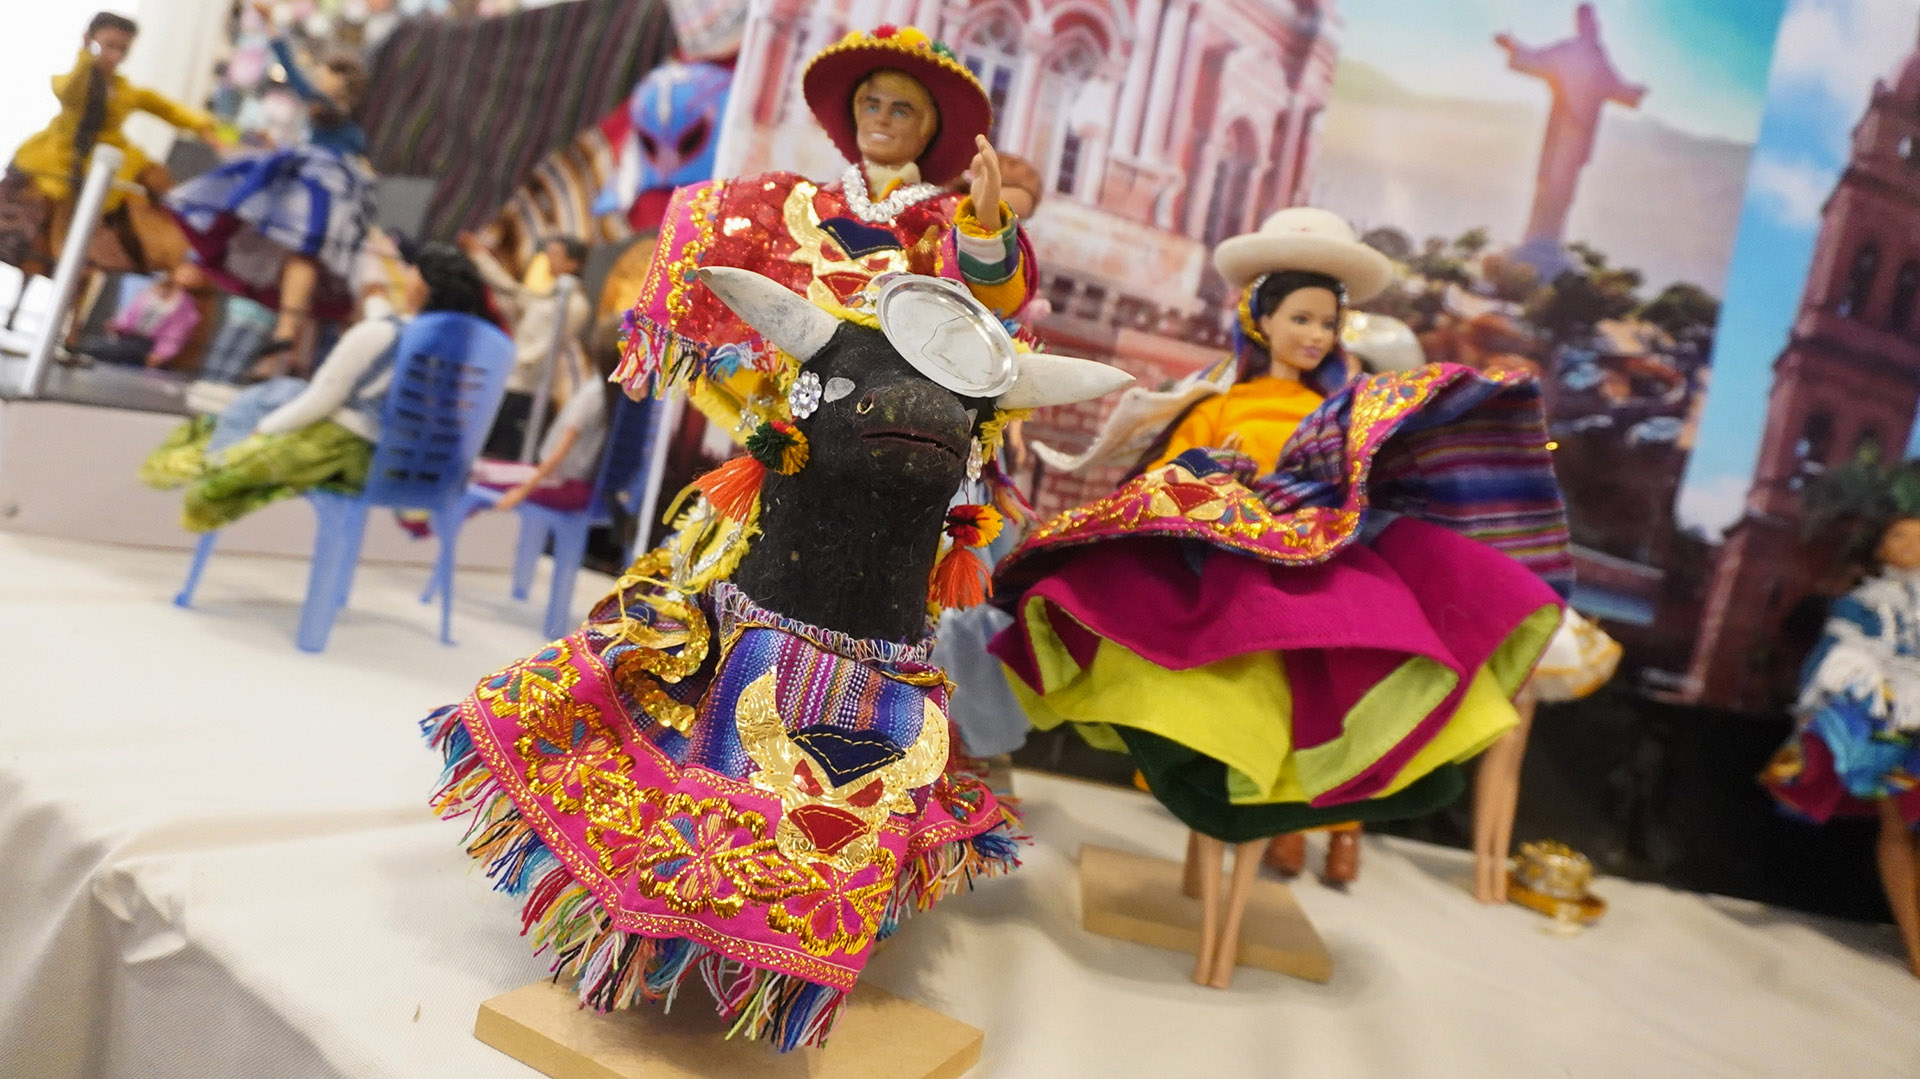 Representación de la danza boliviana Waka Waka durante una exposición de más de 3.000 muñecas Barbie, en La Paz (Bolivia) (Crédito: EFE/Javier Mamani)
